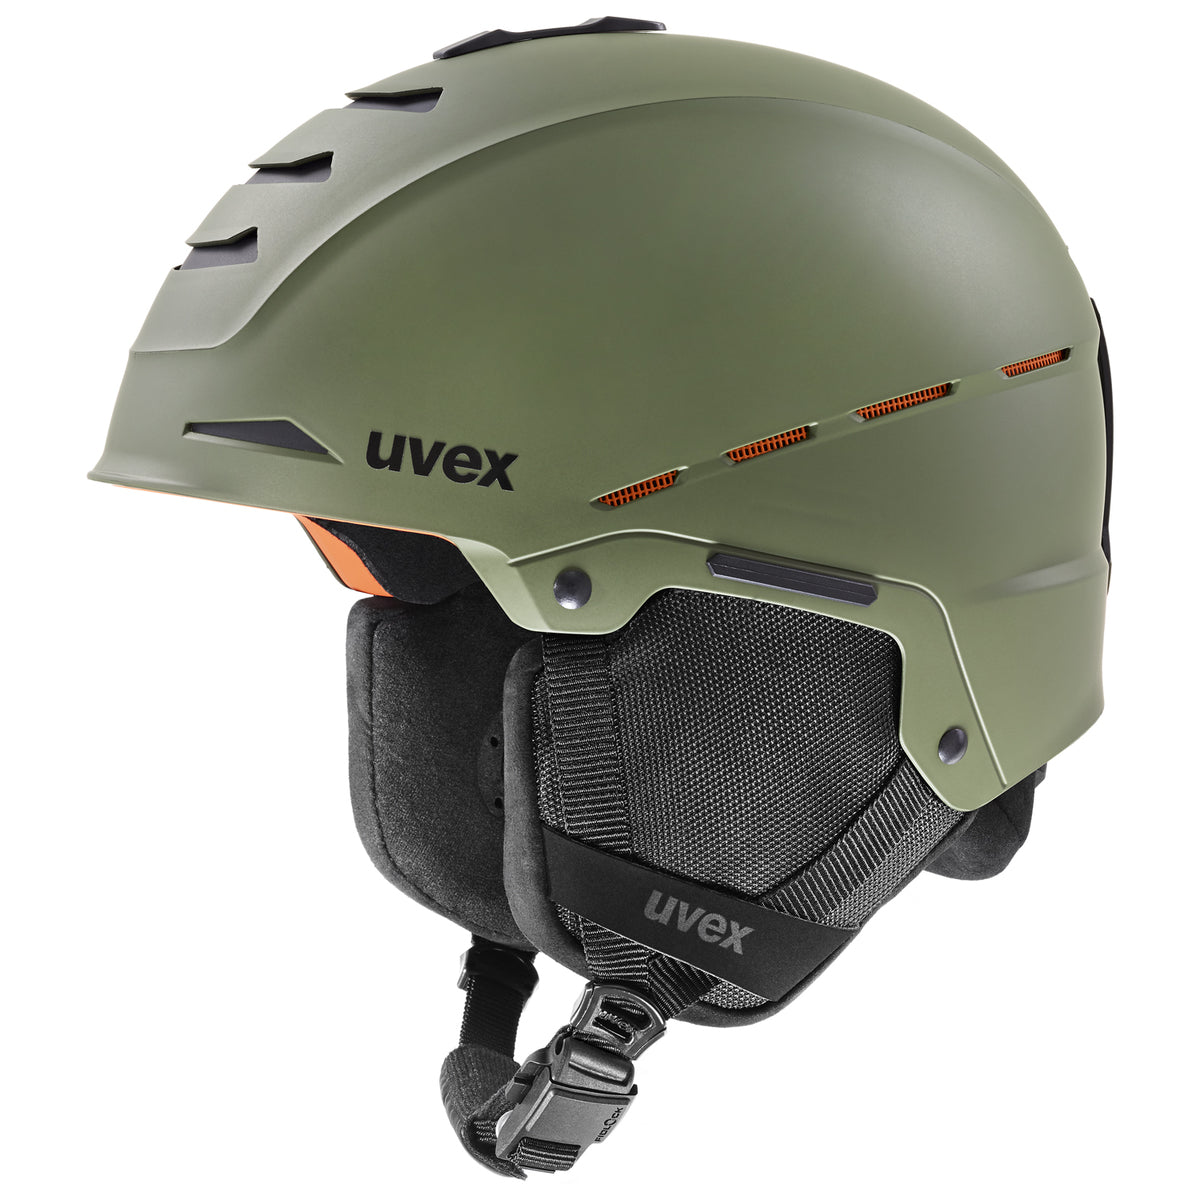 Uvex Legend Pro skihelm - groen - maat 55-59 cm